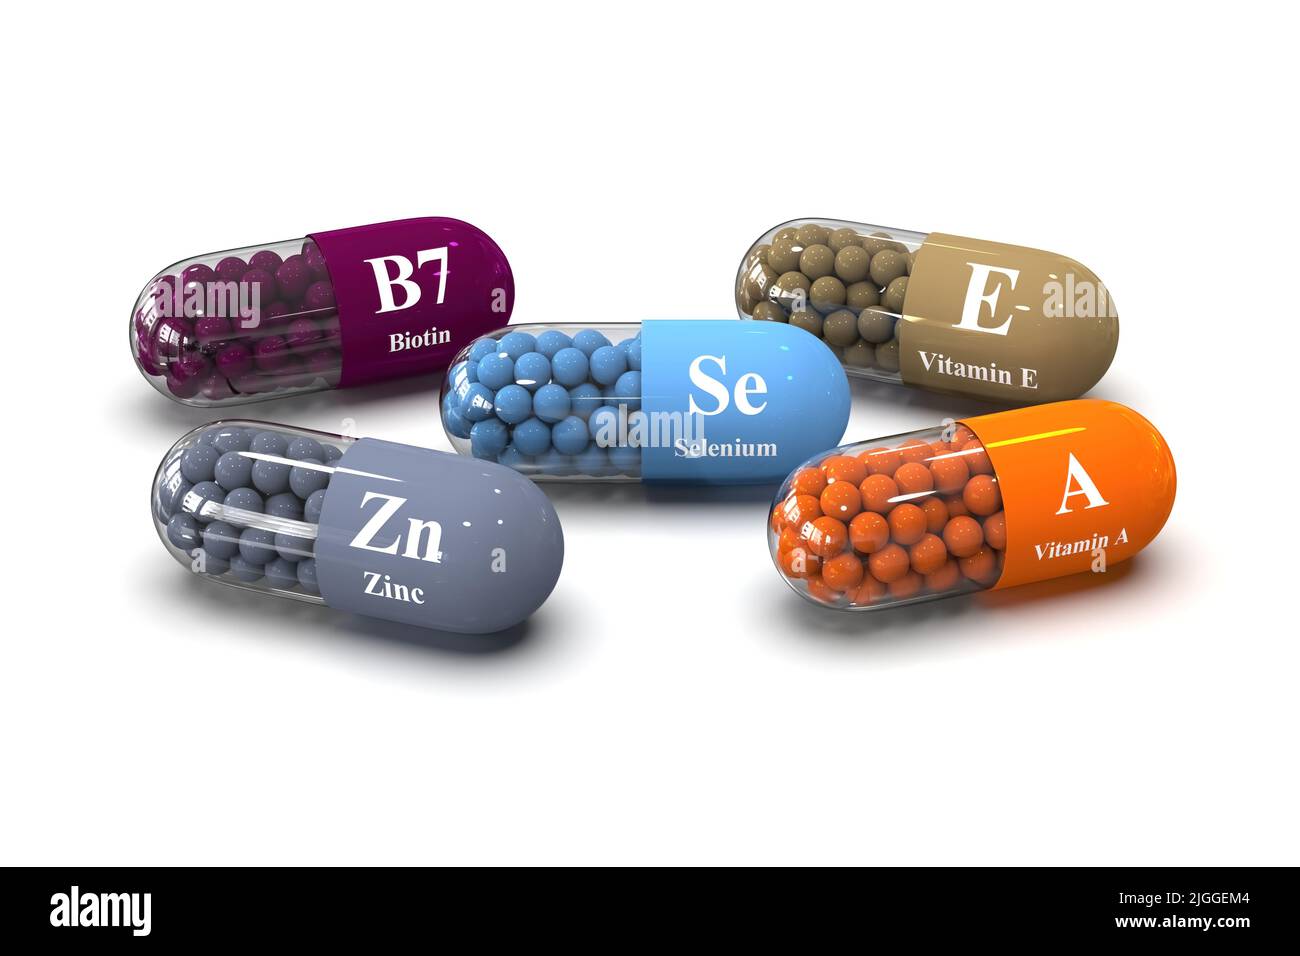 Jeu de capsules avec des éléments nutritifs de détox et des vitamines B7, zinc, vitamine A, E, sélénium sur fond blanc. Illustration de rendu Medical 3D Banque D'Images